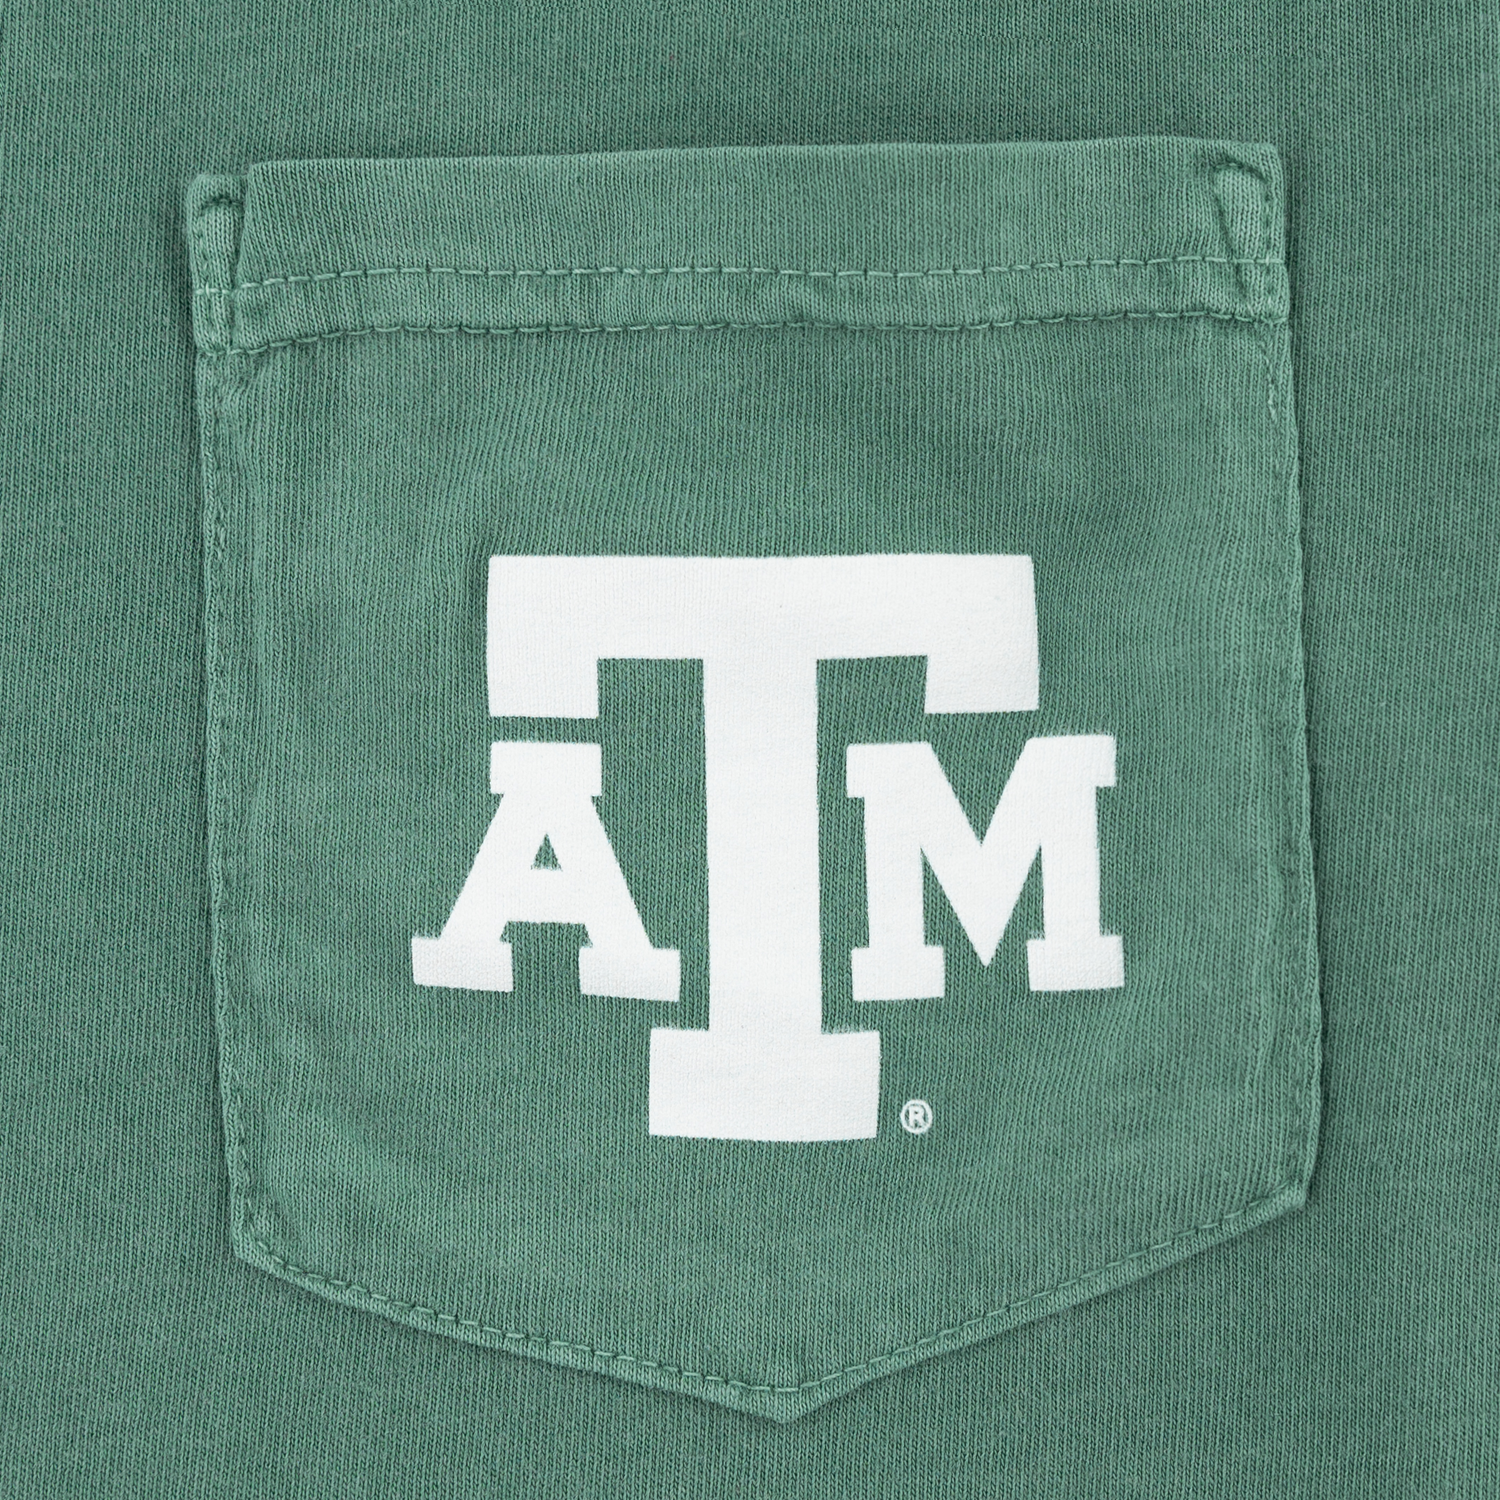 Texas A&M Aggieland Portrait T-Shirt